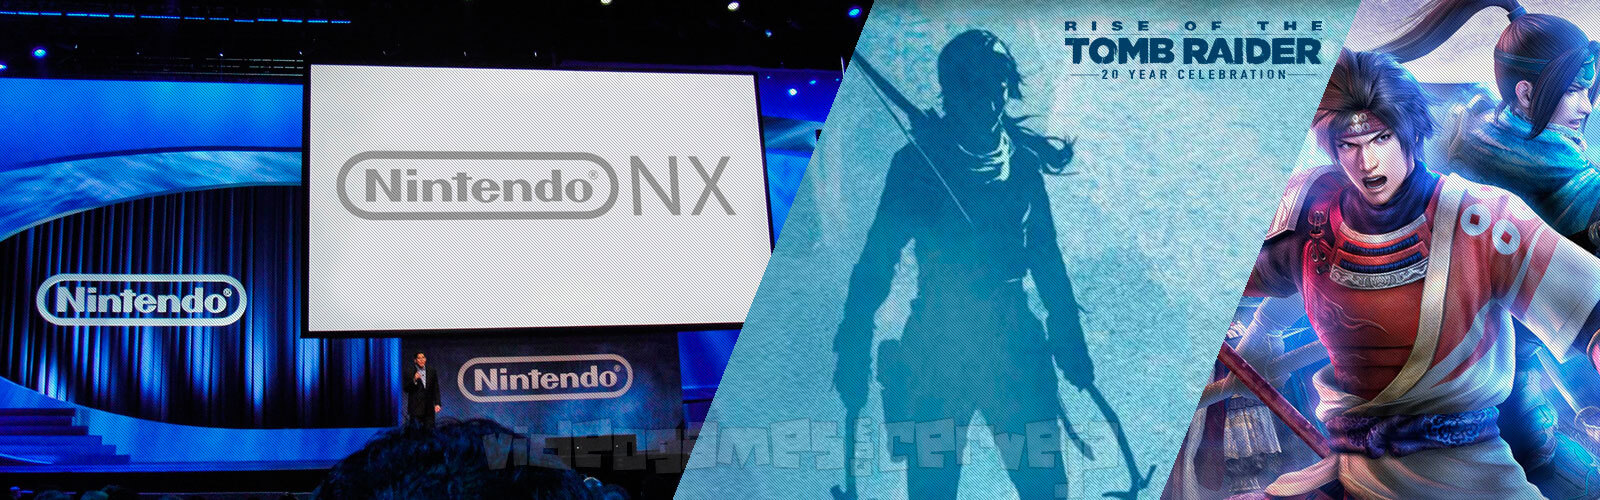 Resumo da Semana - Nintendo NX e Jogos Grátis.. Cover